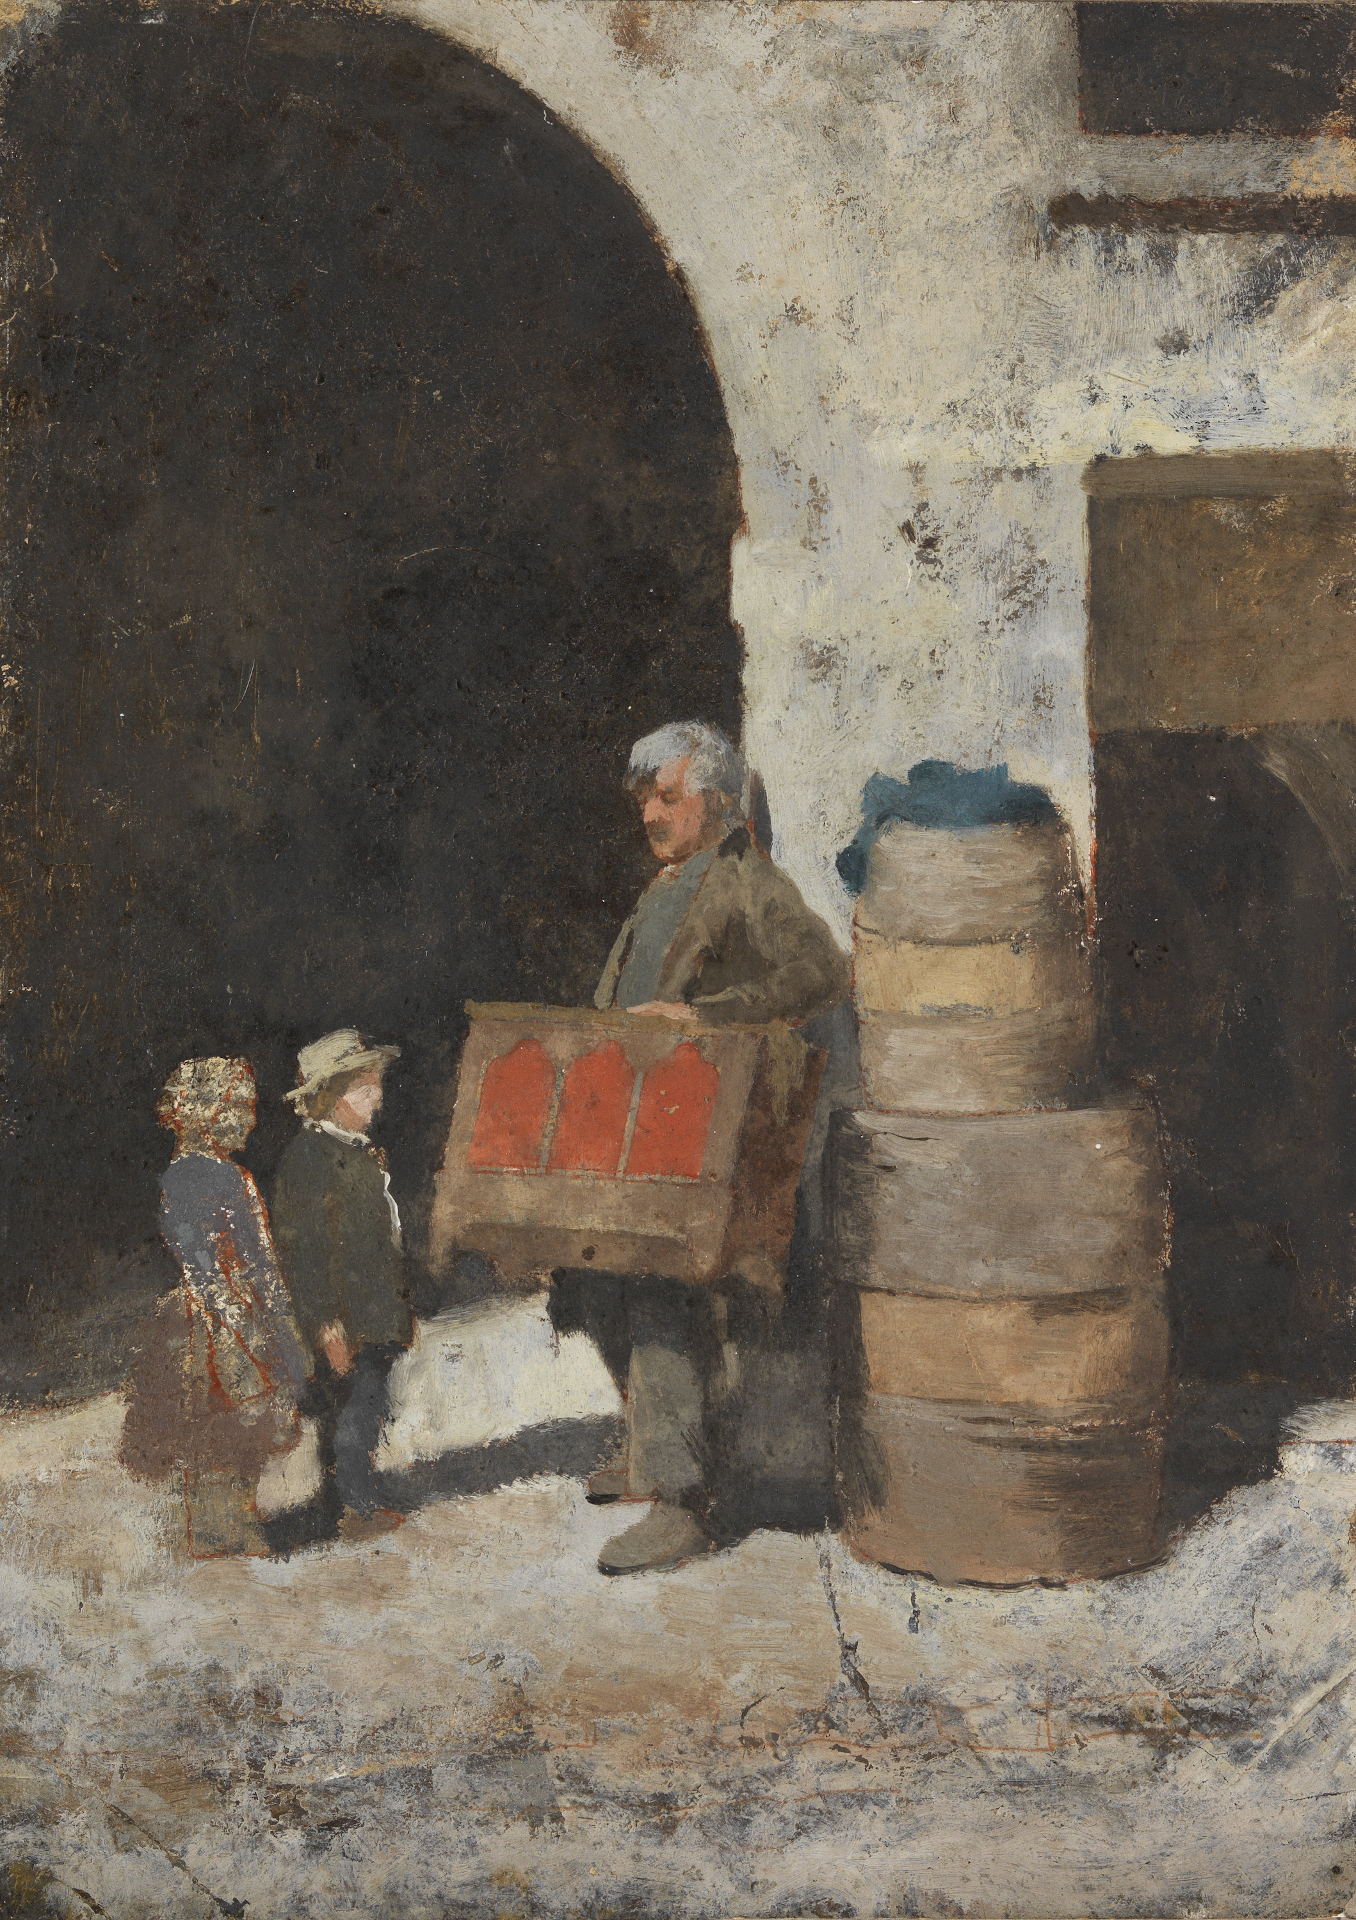 Abbildung des Werks Le Joueur d'orgue barbarie von Charles Nègre, entstanden 1852/53. Zu sehen ist eine Straßenszene mit einem Mann der eine Truhe trägt. Neben ihm stehen zwei Kinder.